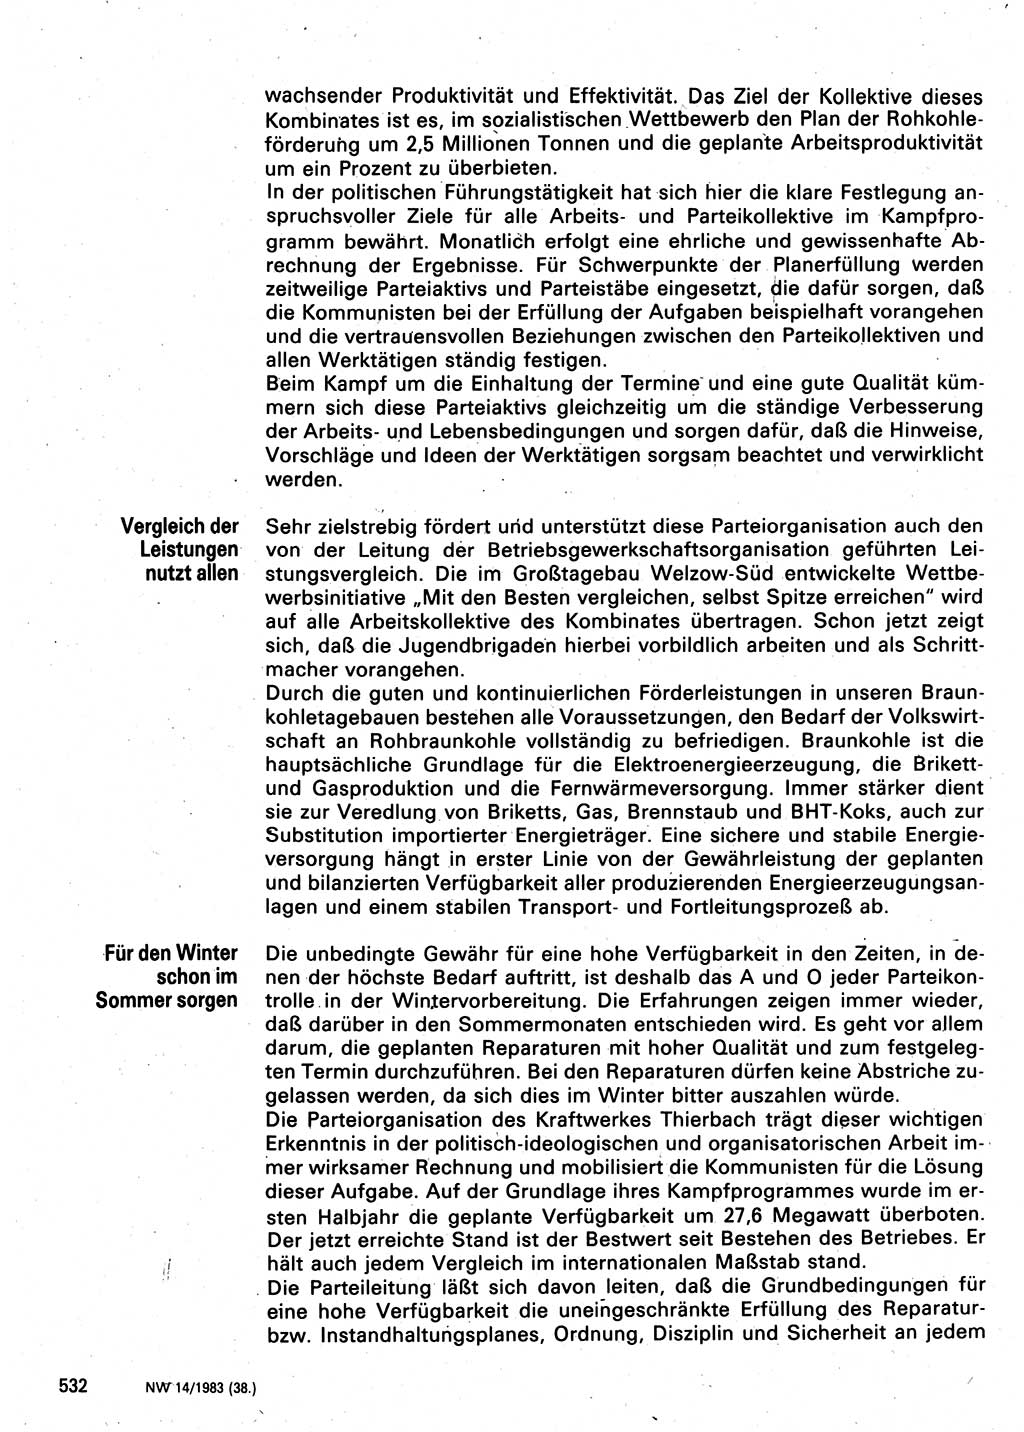 Neuer Weg (NW), Organ des Zentralkomitees (ZK) der SED (Sozialistische Einheitspartei Deutschlands) für Fragen des Parteilebens, 38. Jahrgang [Deutsche Demokratische Republik (DDR)] 1983, Seite 532 (NW ZK SED DDR 1983, S. 532)